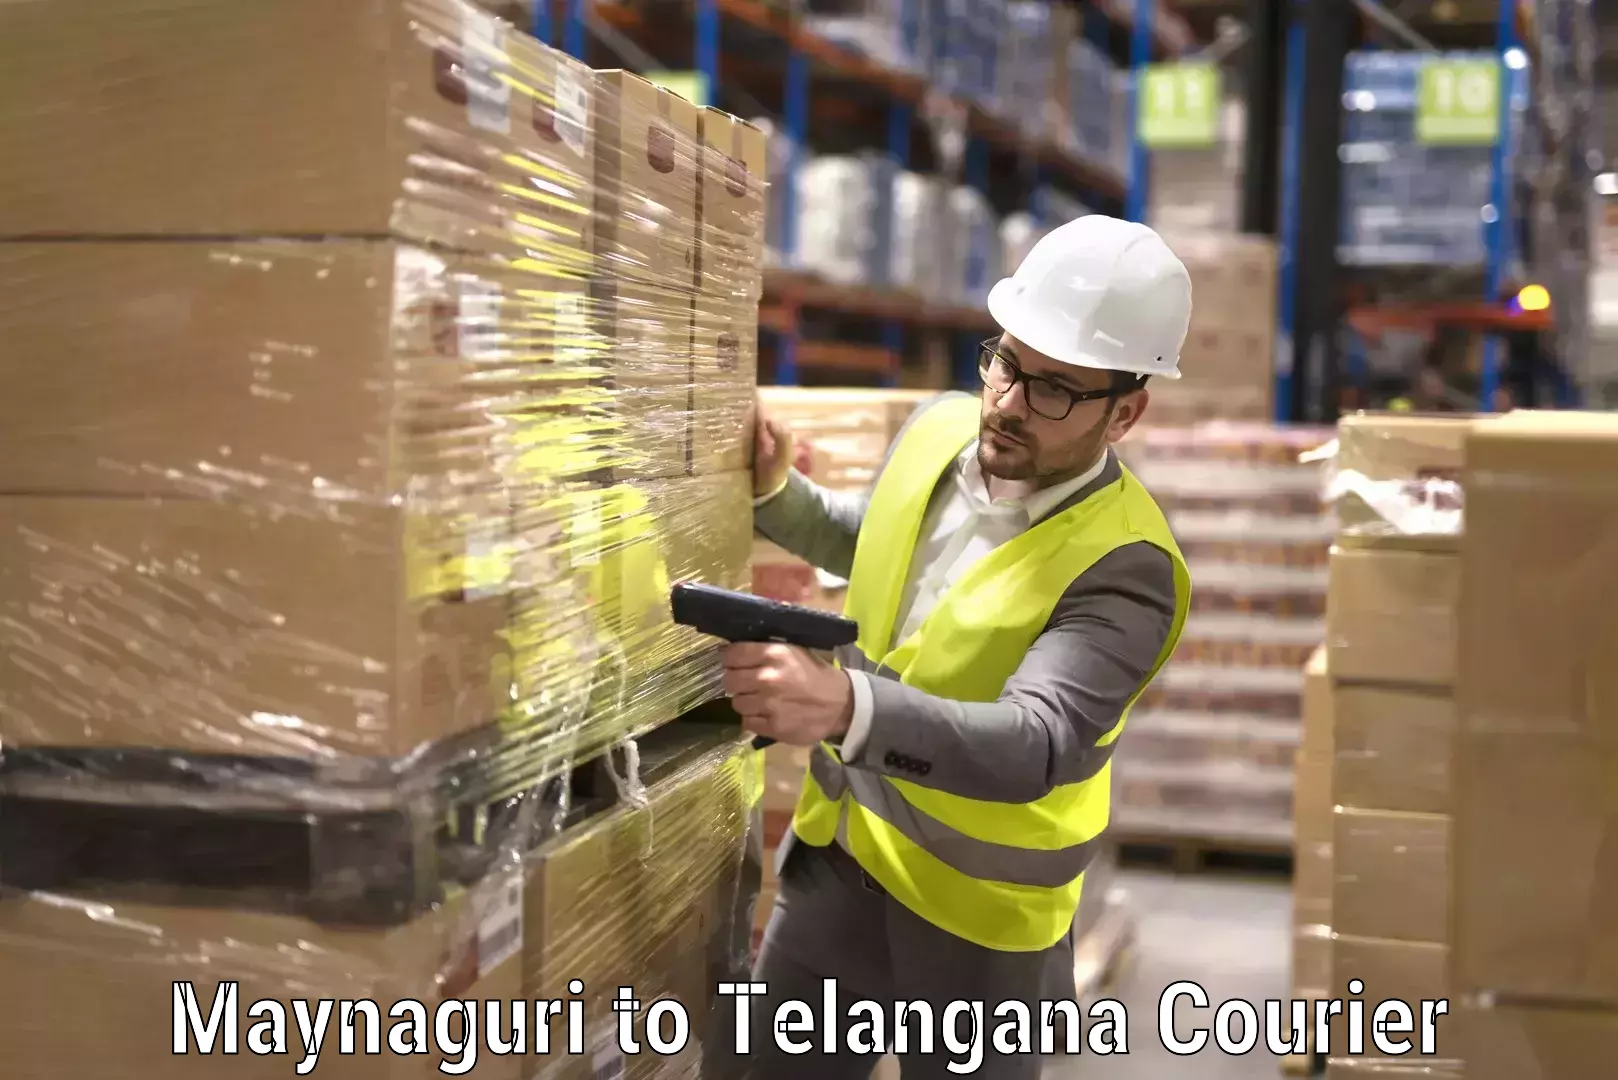 Furniture transport services in Maynaguri to Telangana